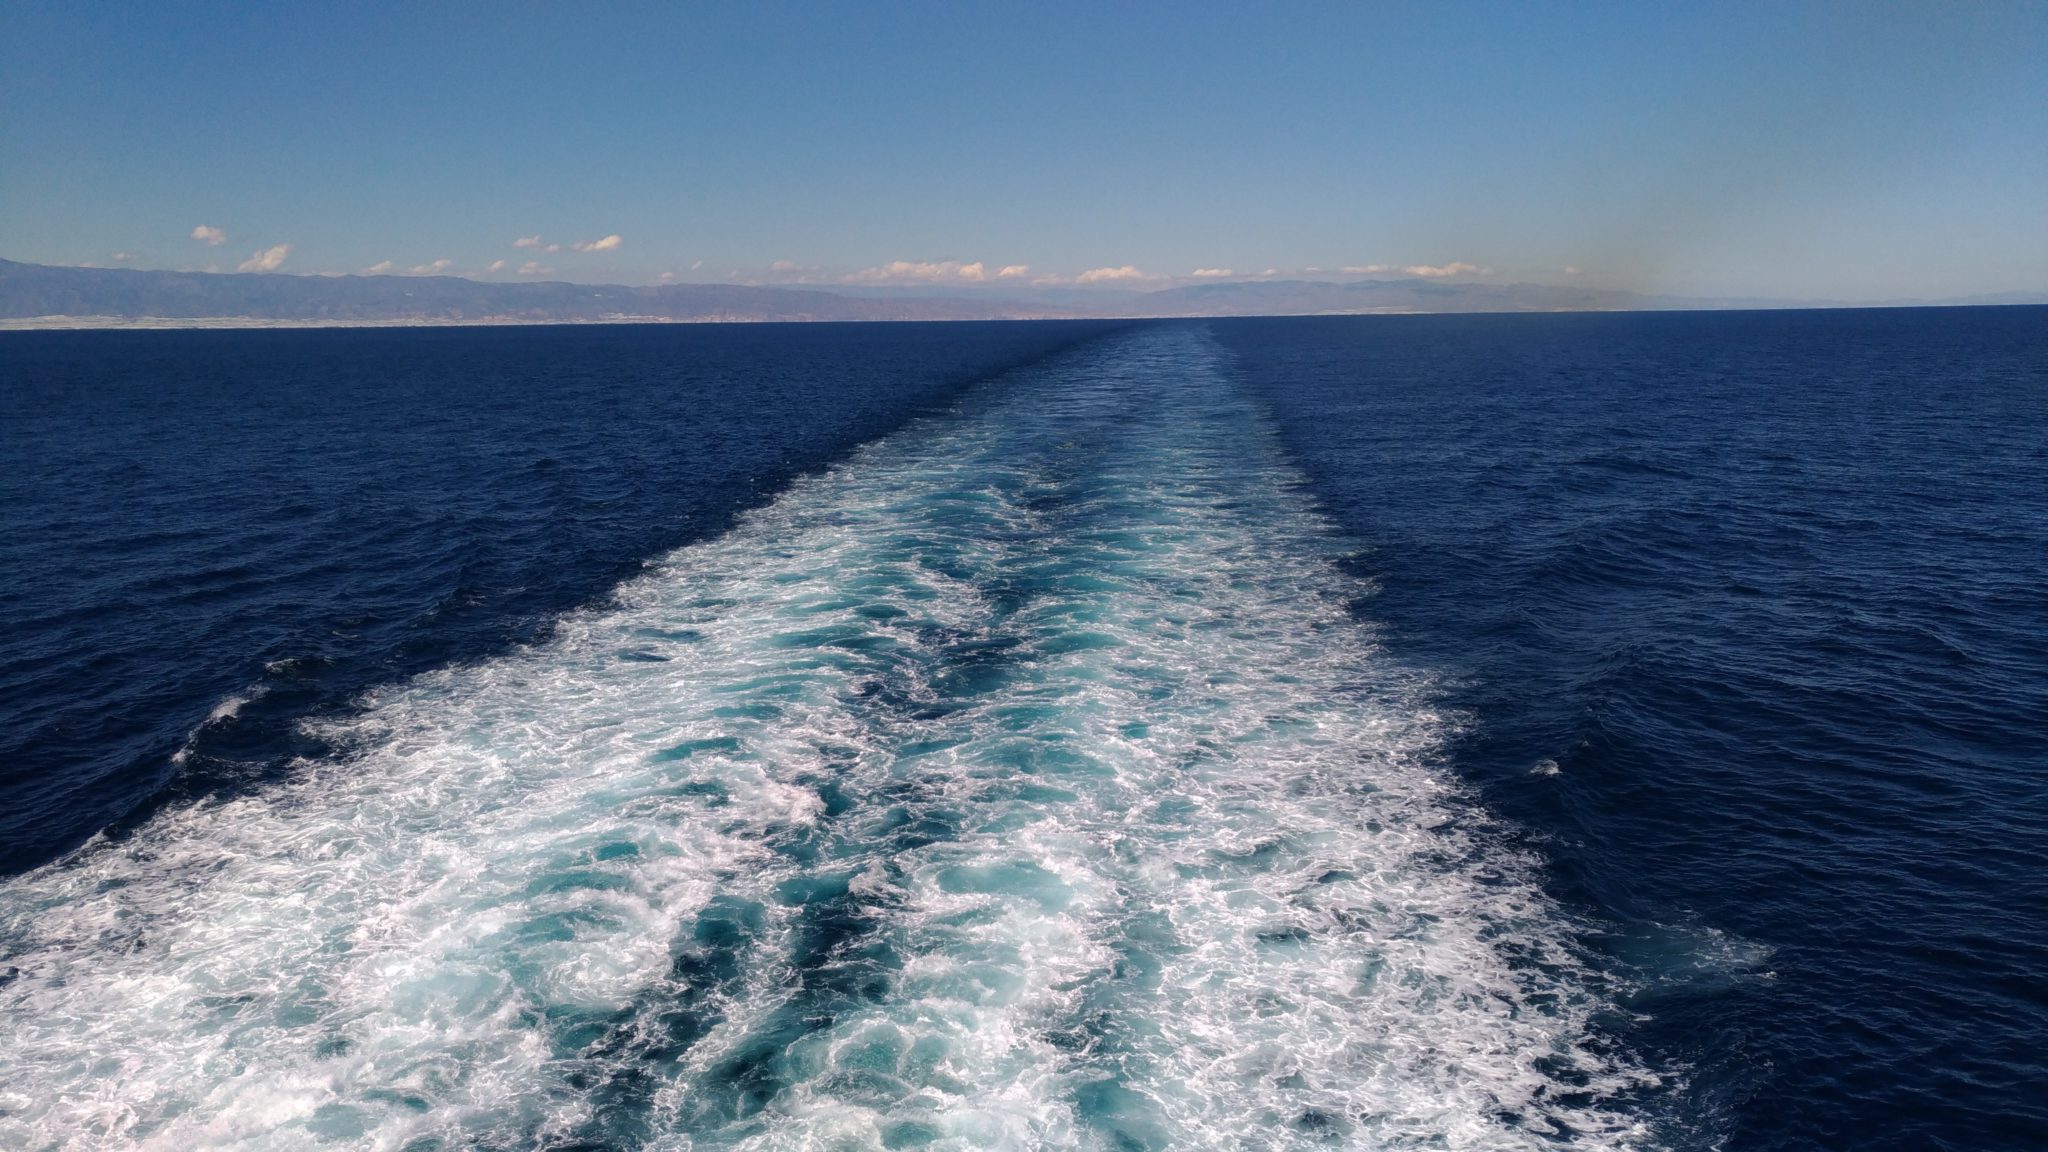 Моря английского океана. Средиземное море Гибралтарский пролив Атлантический океан. Галоклин Скаген. Город Скаген два течения. Тихий океан и Атлантический океан.